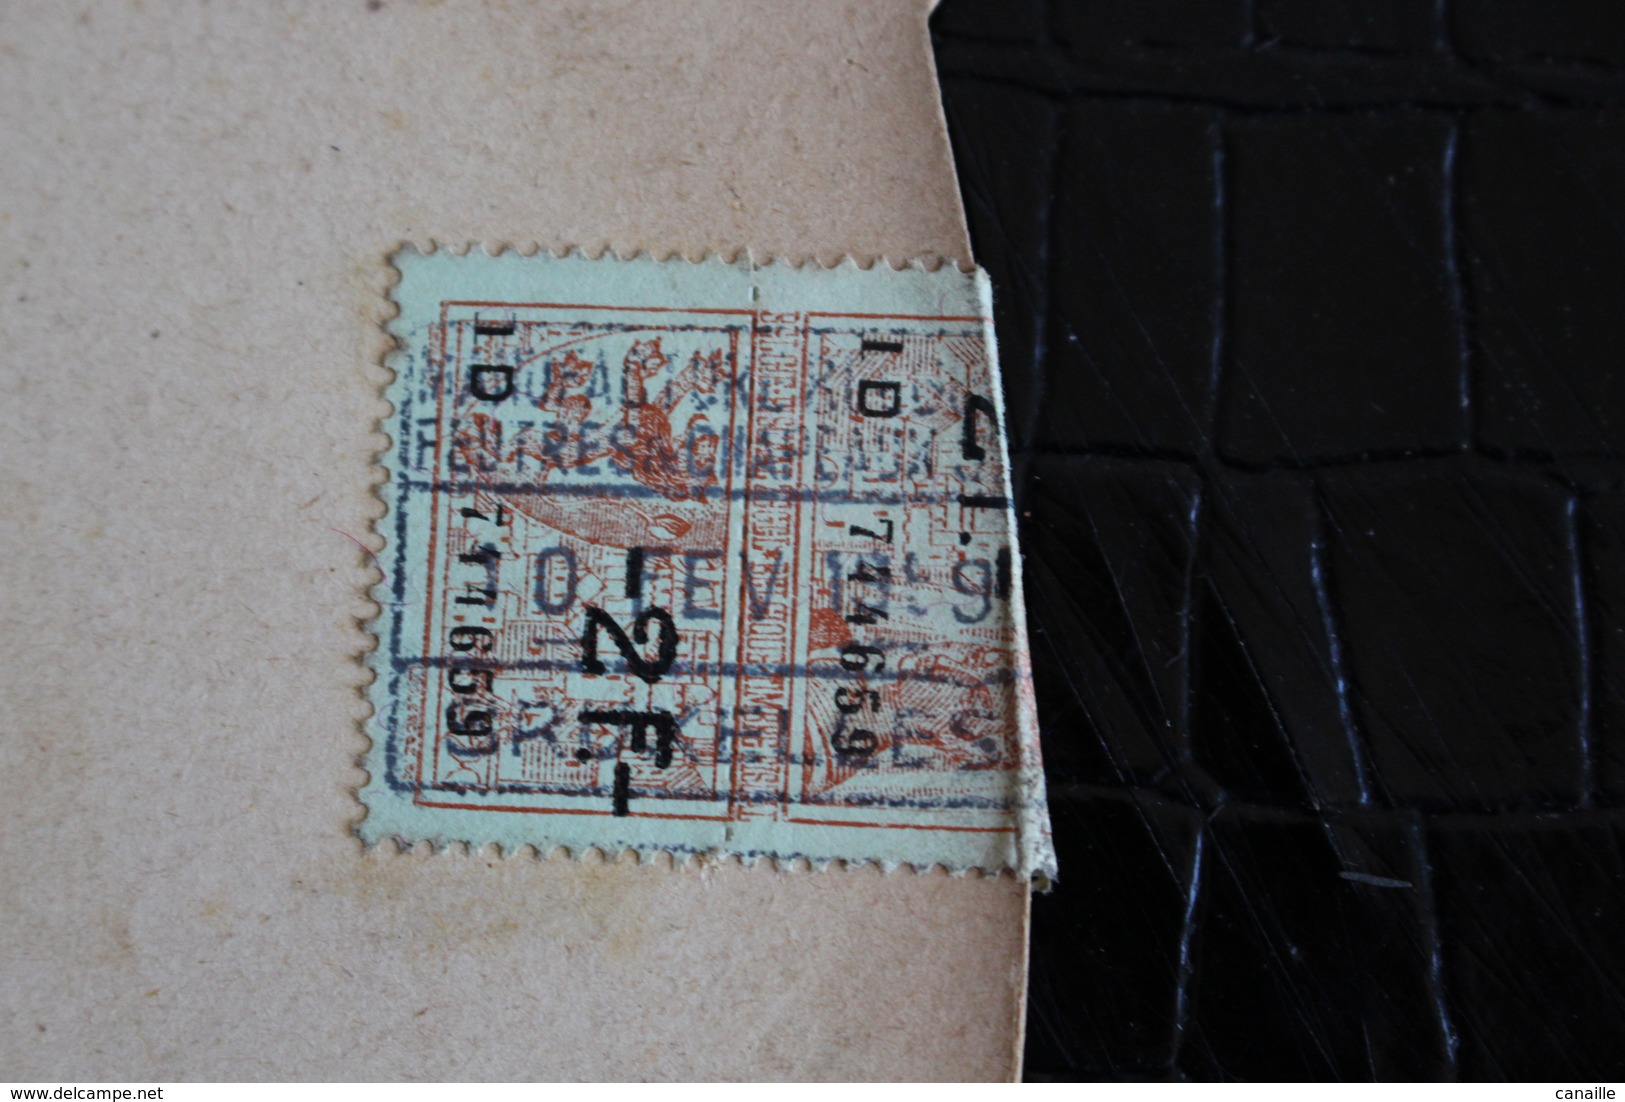 Rare Publicité De Carton - Tabac GOSSET-St MICHEL - Moham's - Product Of Brummel - 1959 - Diametre 30 Cm - Reclame-artikelen